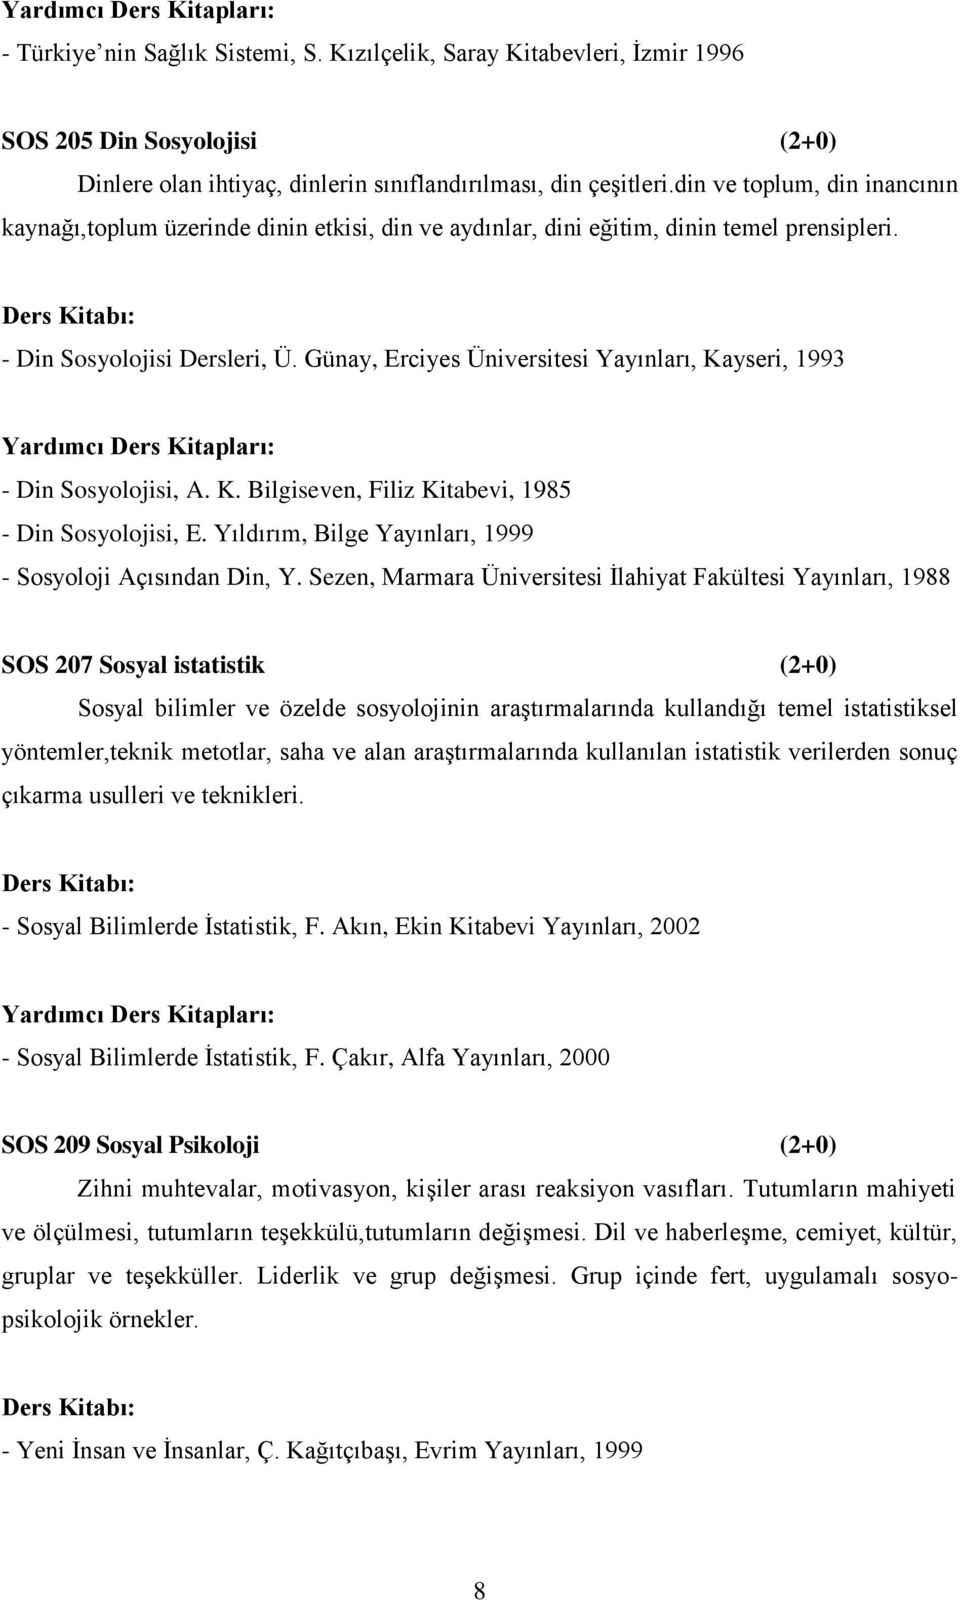 Günay, Erciyes Üniversitesi Yayınları, Kayseri, 1993 - Din Sosyolojisi, A. K. Bilgiseven, Filiz Kitabevi, 1985 - Din Sosyolojisi, E. Yıldırım, Bilge Yayınları, 1999 - Sosyoloji Açısından Din, Y.